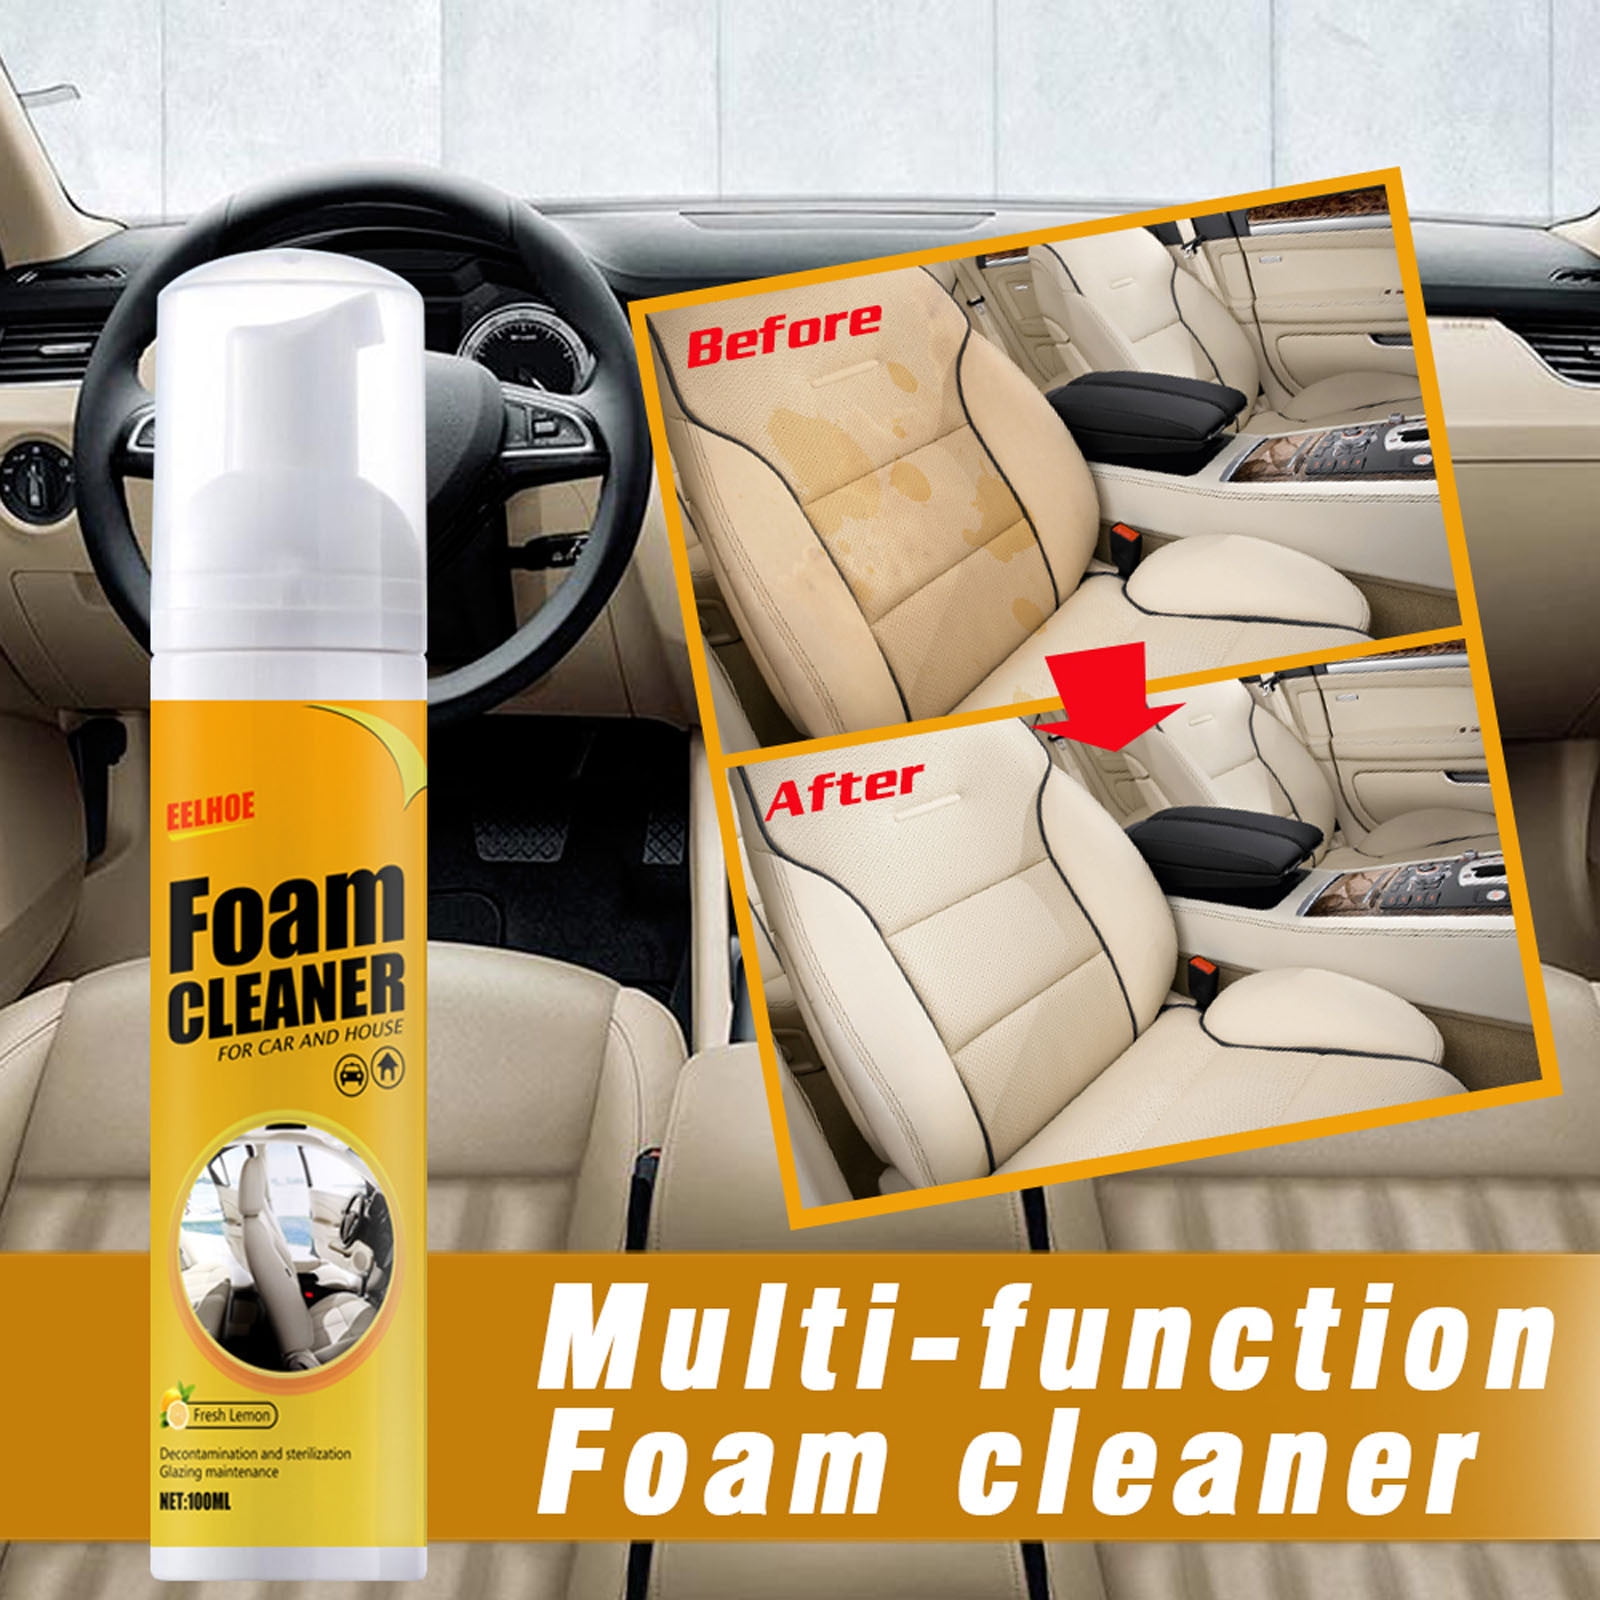 Car Interior Seat Cleaner Plastic Leather Polish Multi Purpose